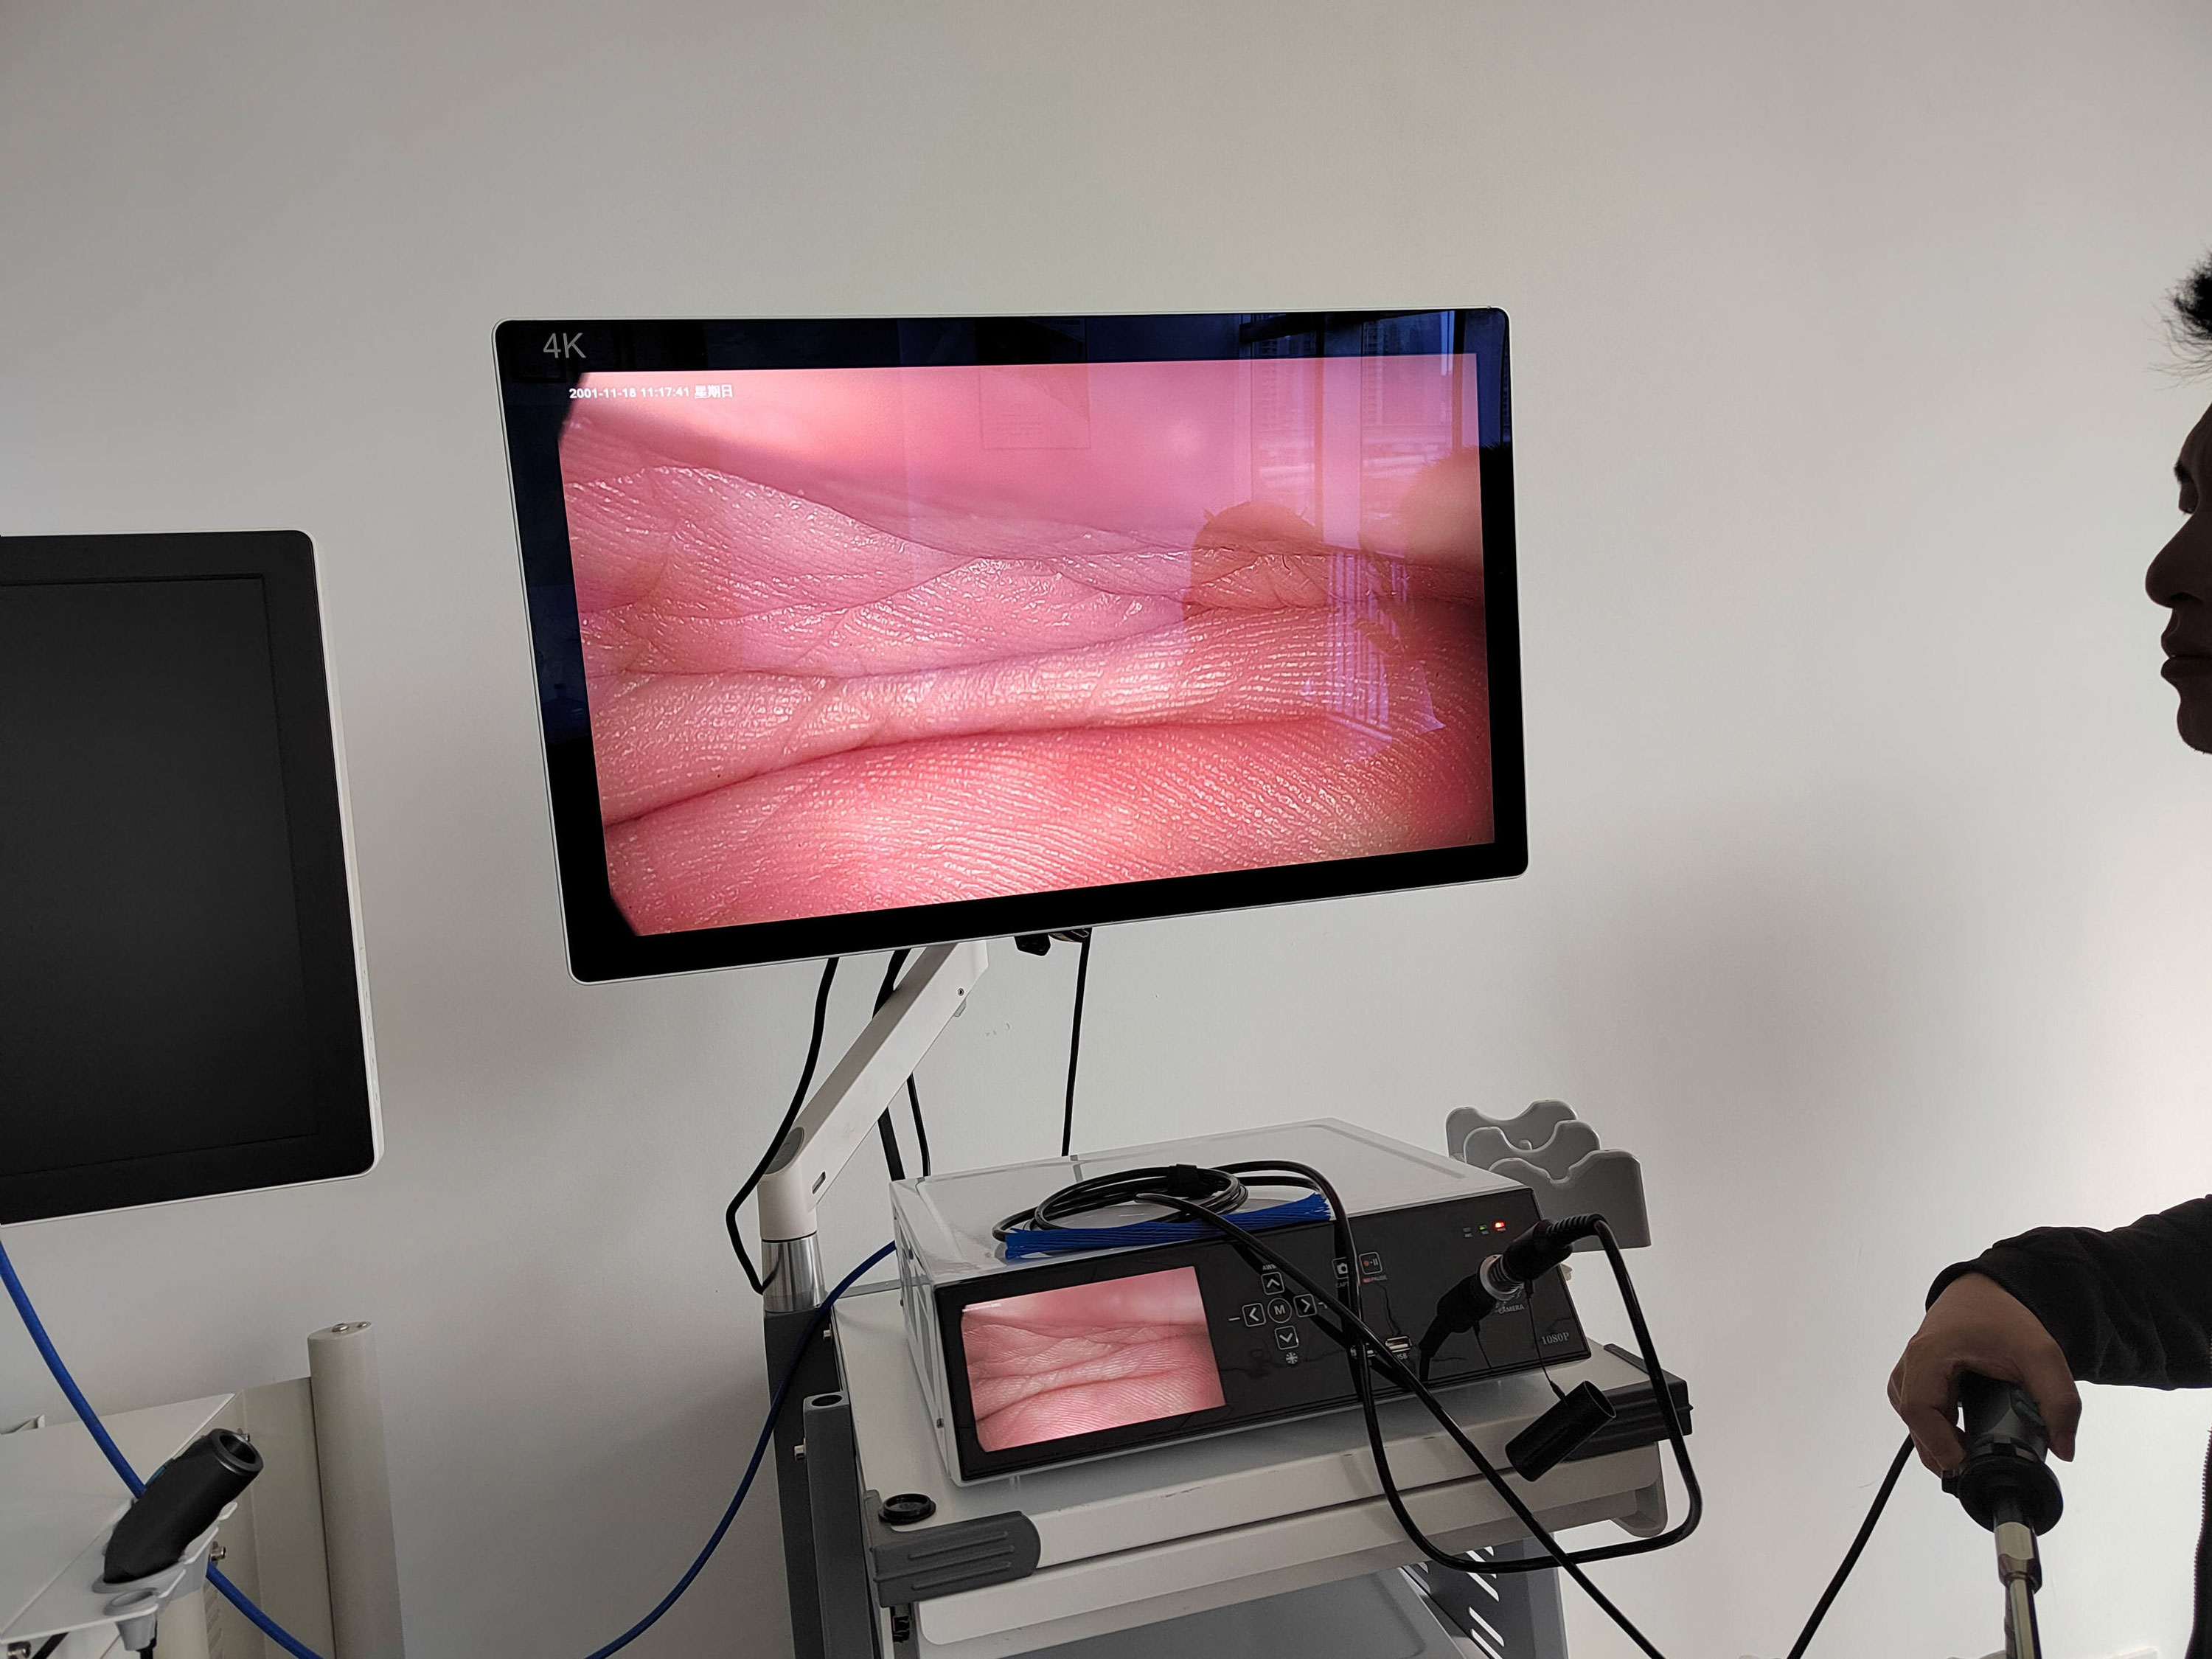 Appareil d'endoscopie médicale Full HD Système d'endoscopie vidéo pour ORL Laparoscope Hystéroscopie